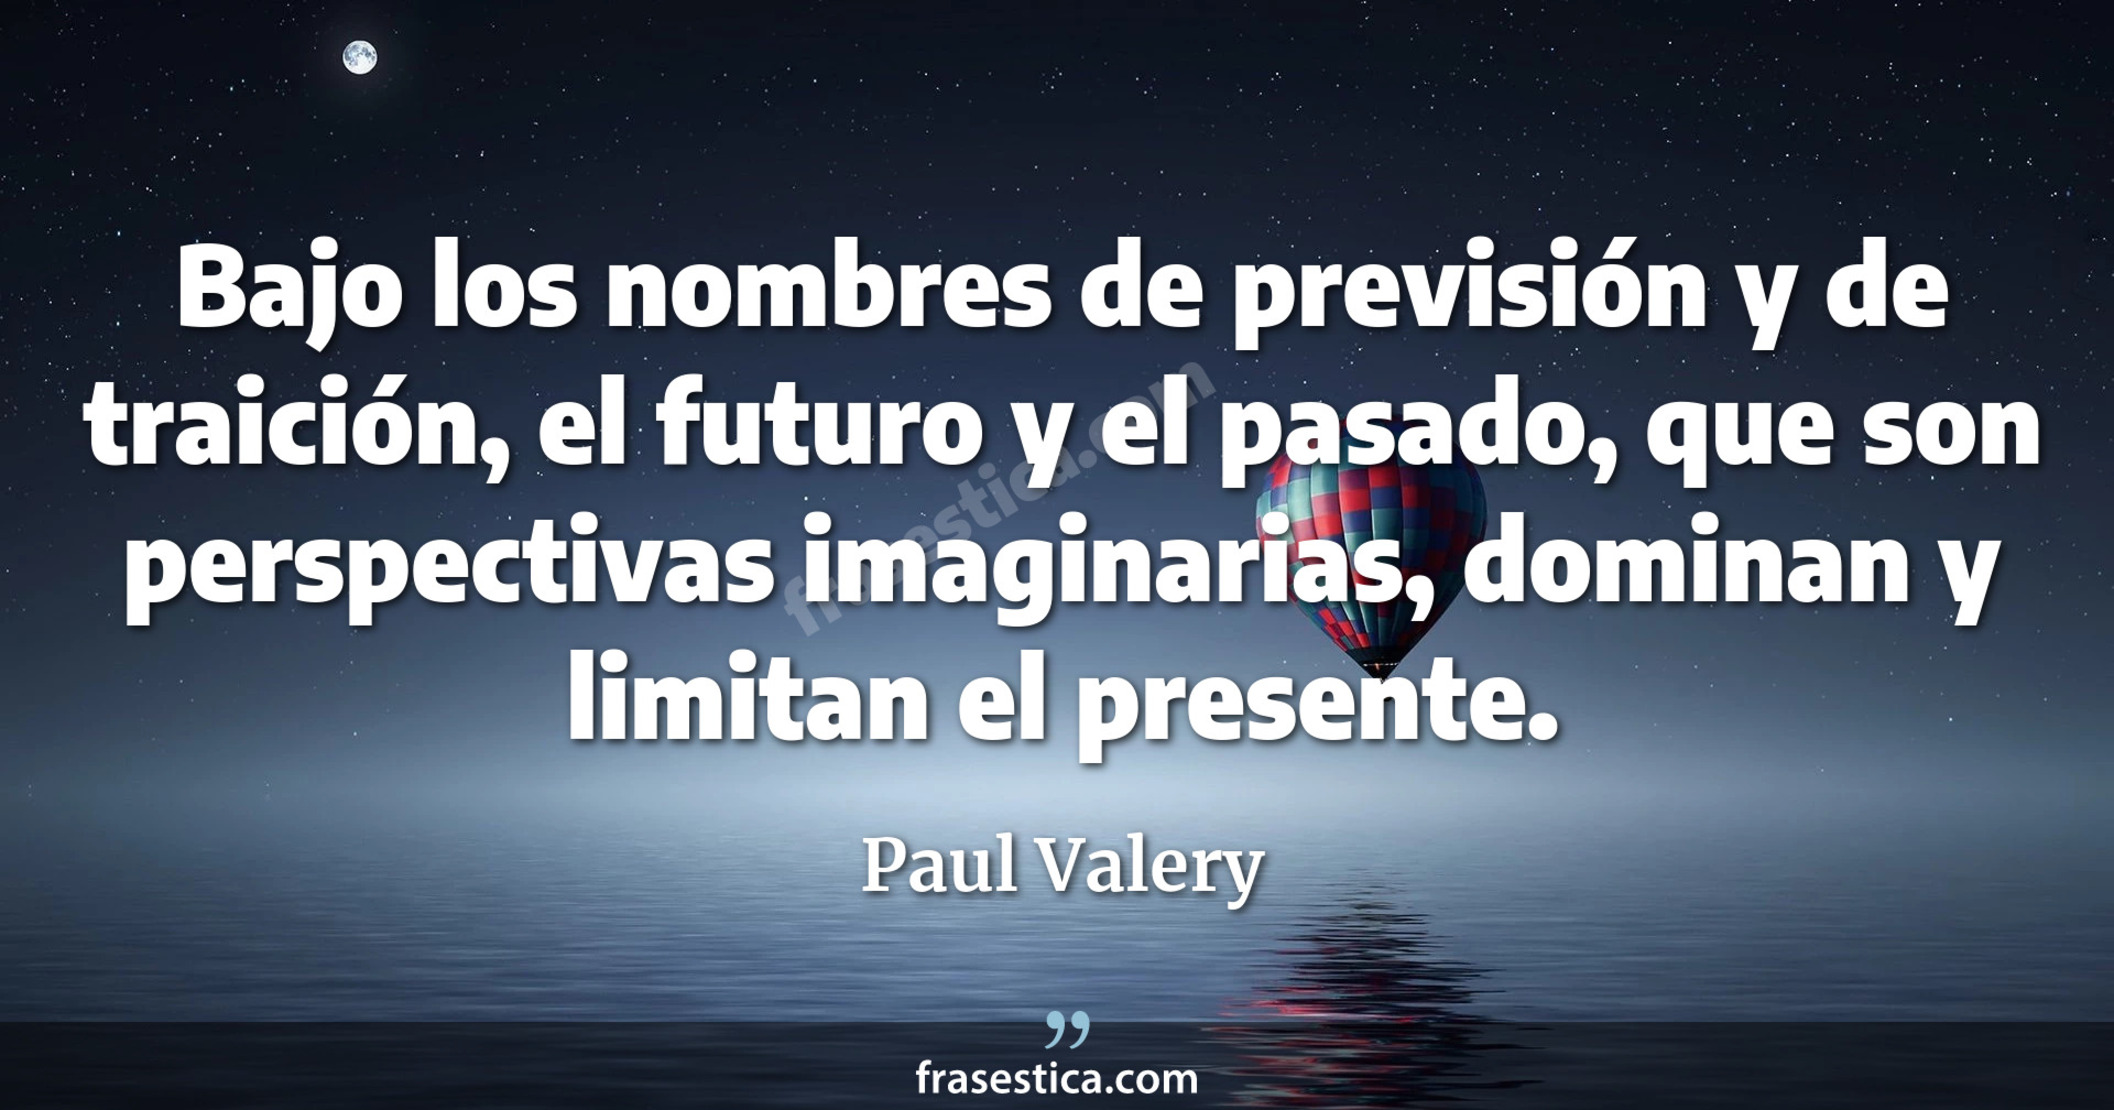 Bajo los nombres de previsión y de traición, el futuro y el pasado, que son perspectivas imaginarias, dominan y limitan el presente. - Paul Valery